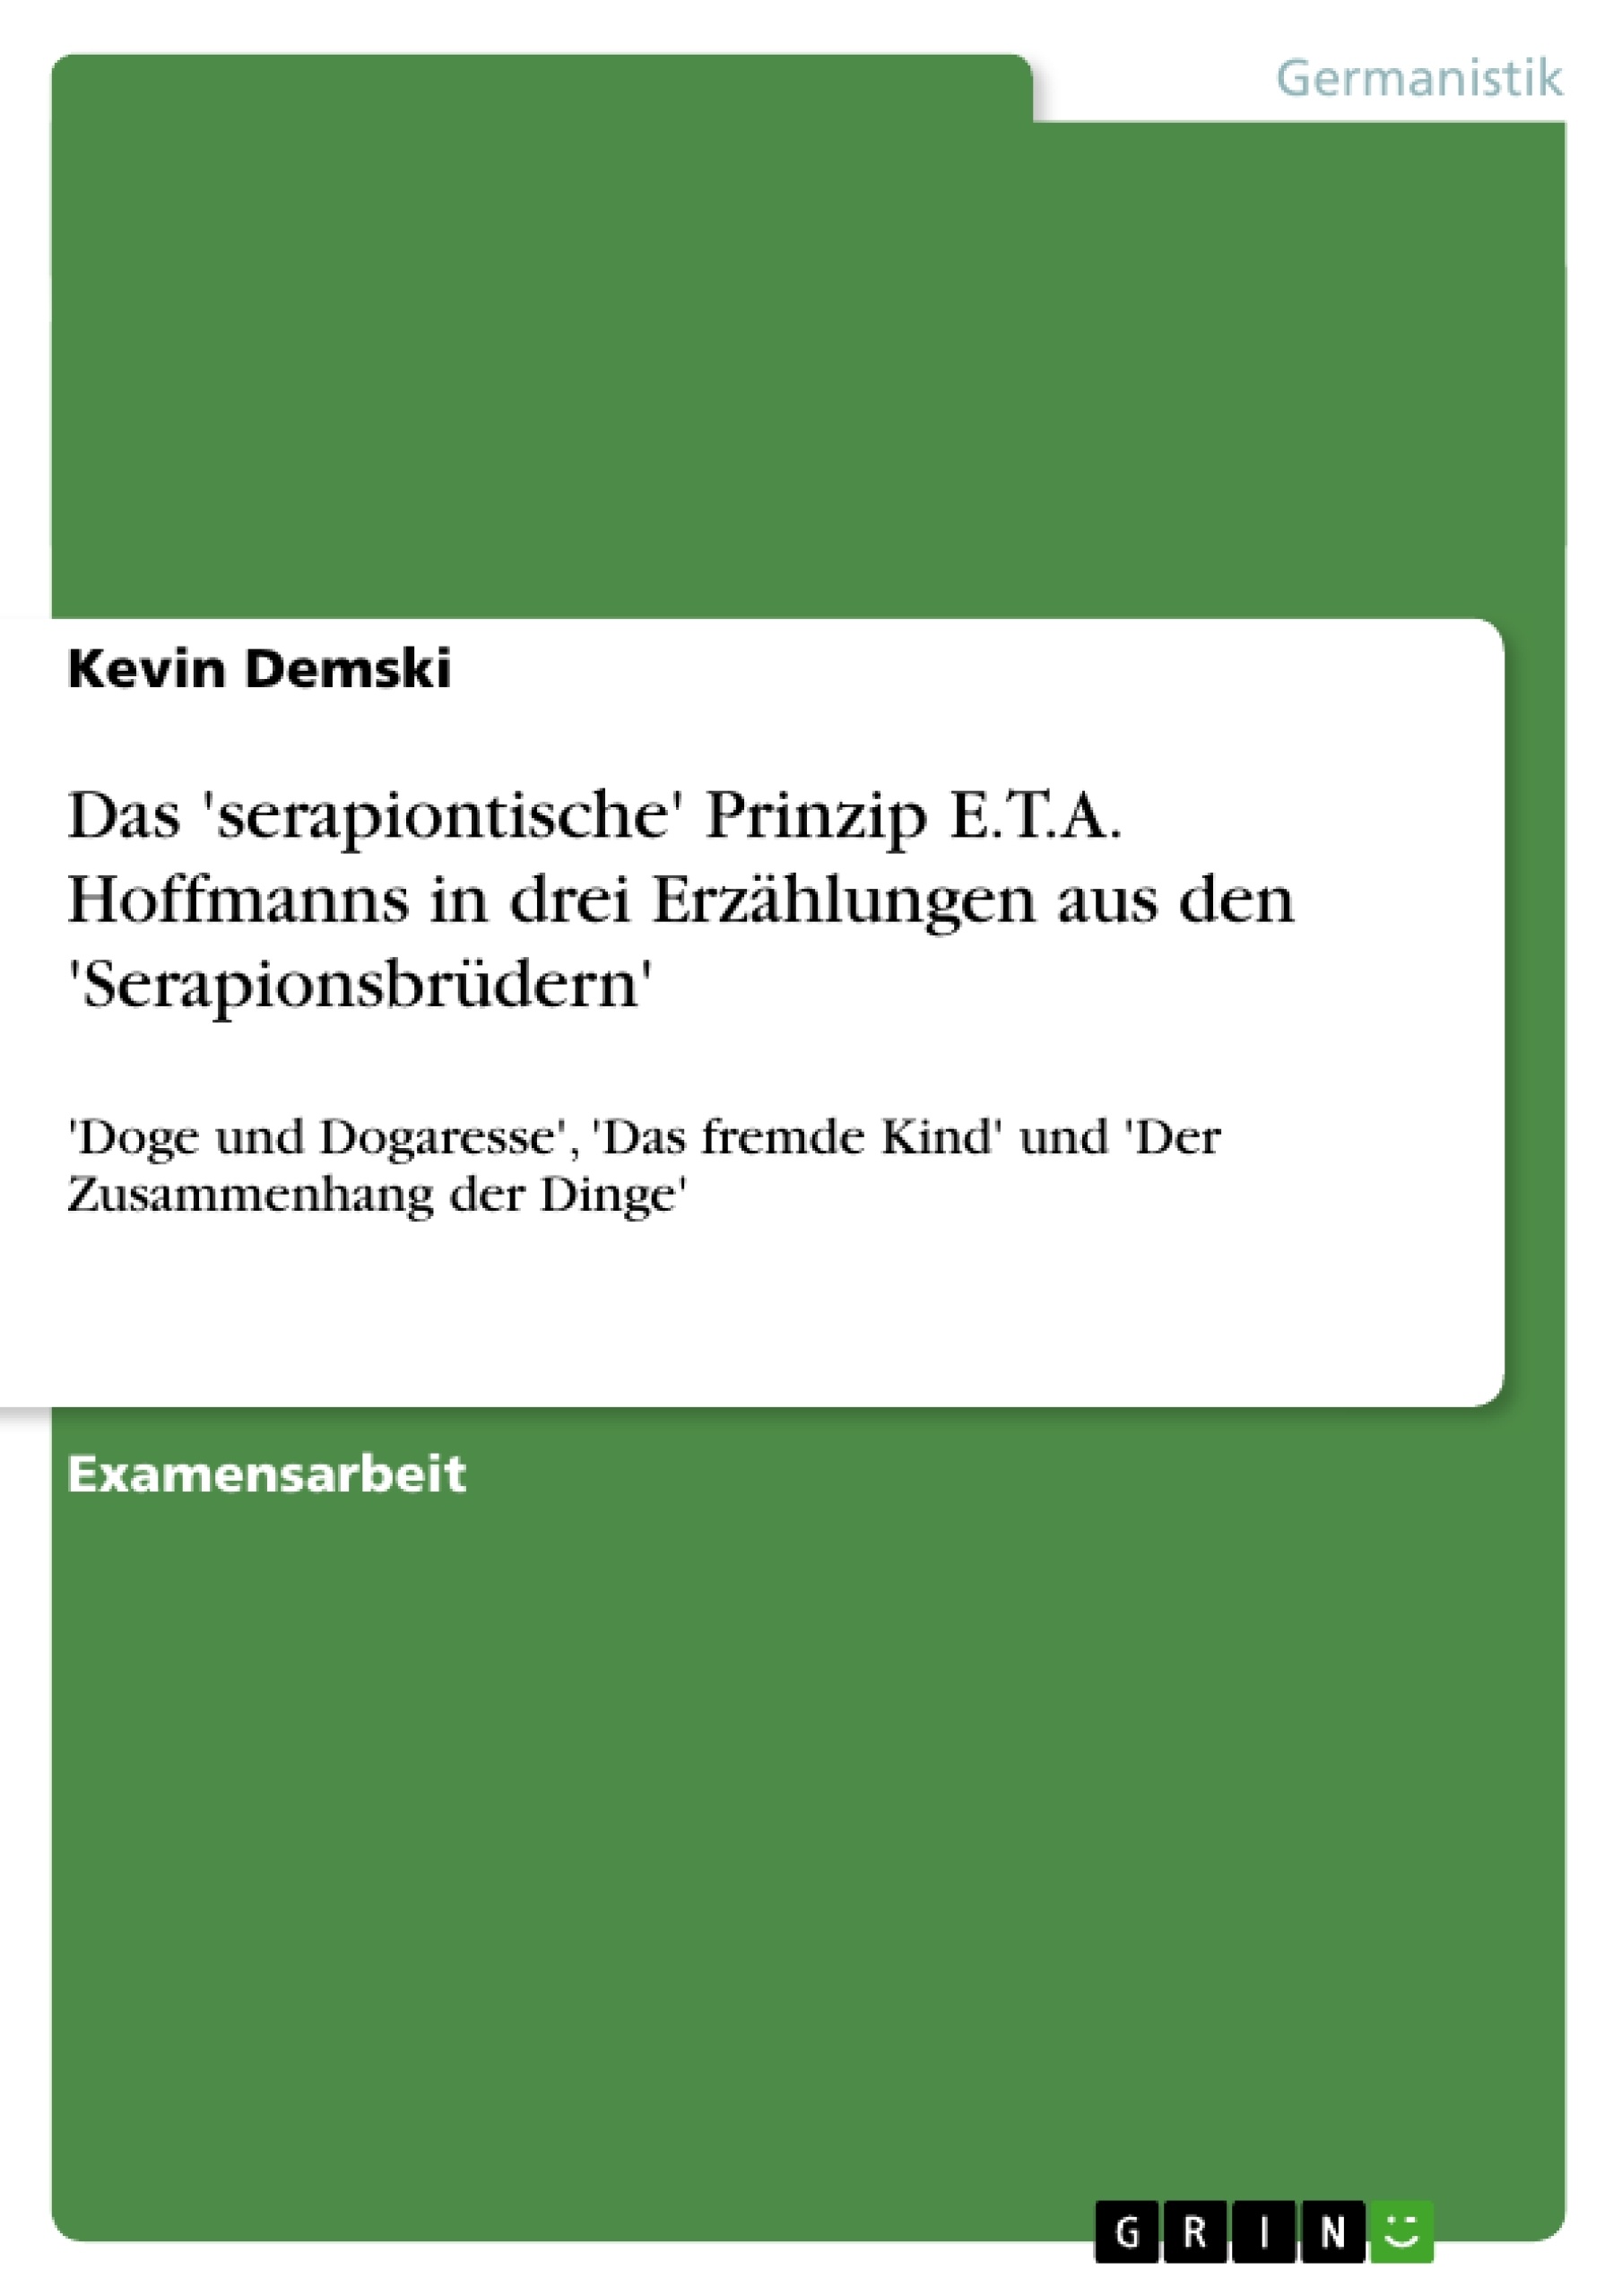 Title: Das 'serapiontische' Prinzip E.T.A. Hoffmanns in drei Erzählungen aus den 'Serapionsbrüdern'